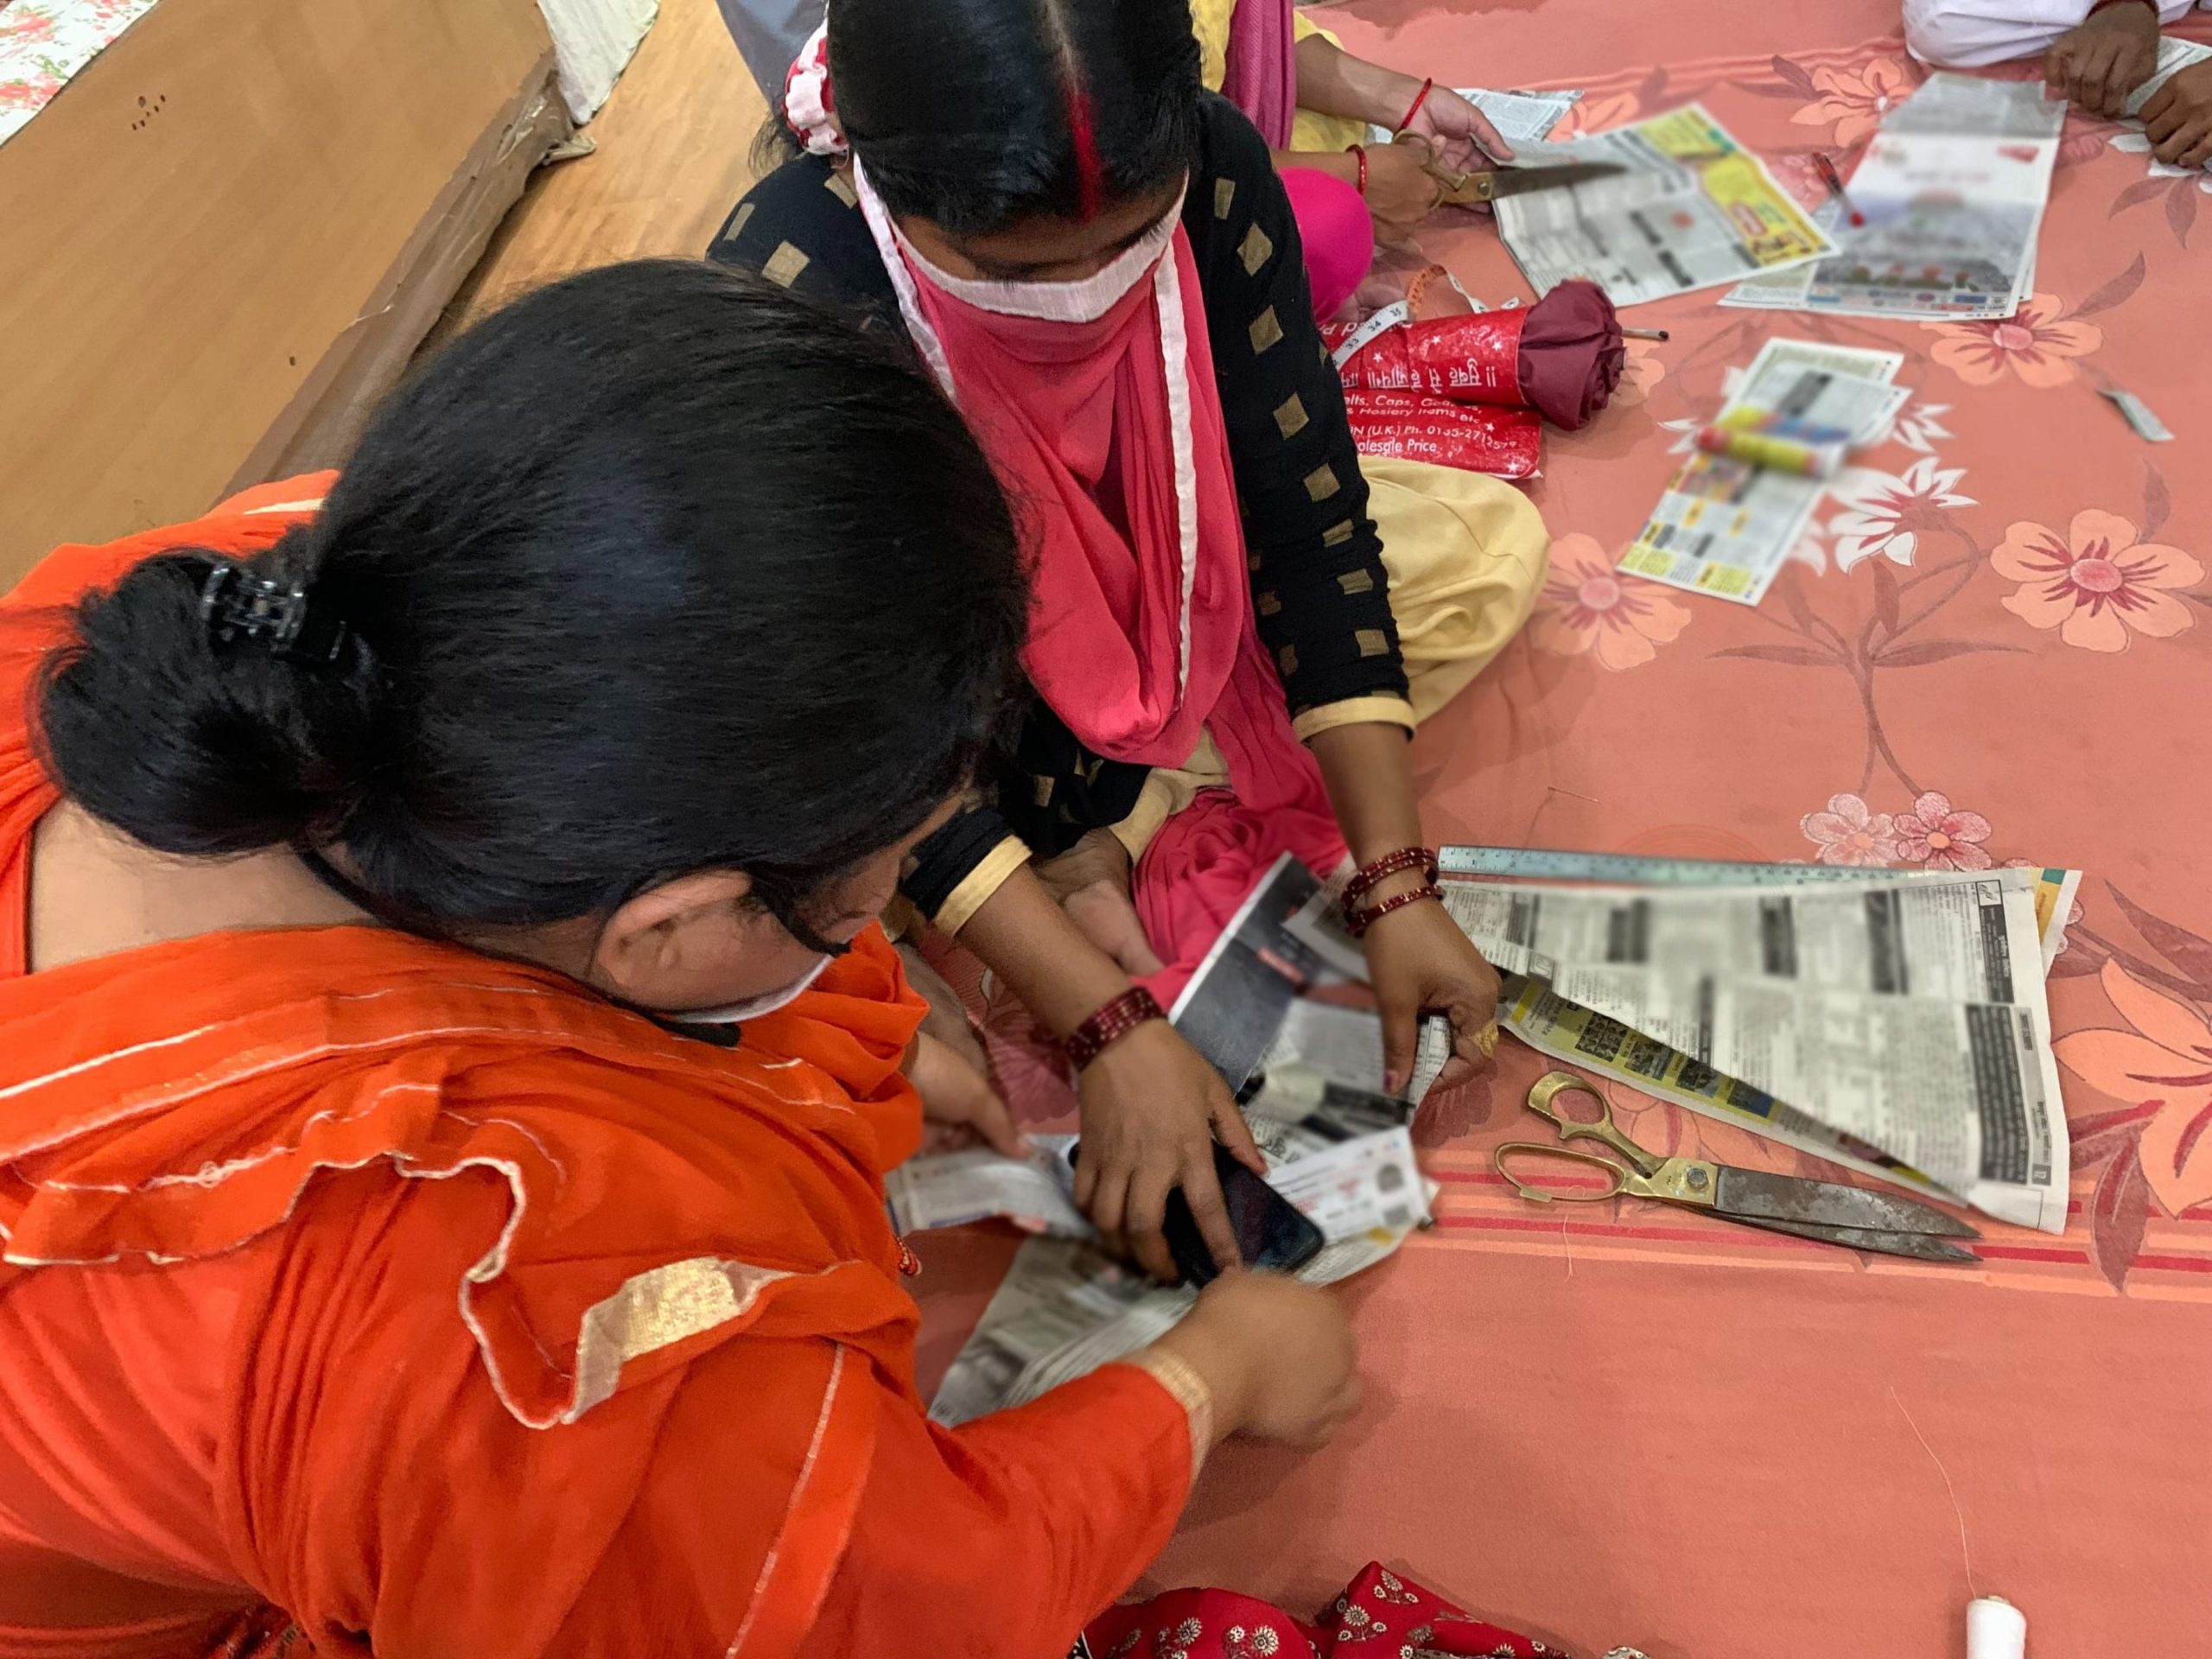 Kaksi naista istuu lattialla leikkelemässä sanomalehden kaltaista paperia. Toisella naisella on oranssinpunainen asu, toisella keltainen mekko, musta paita ja pinkki huivi.